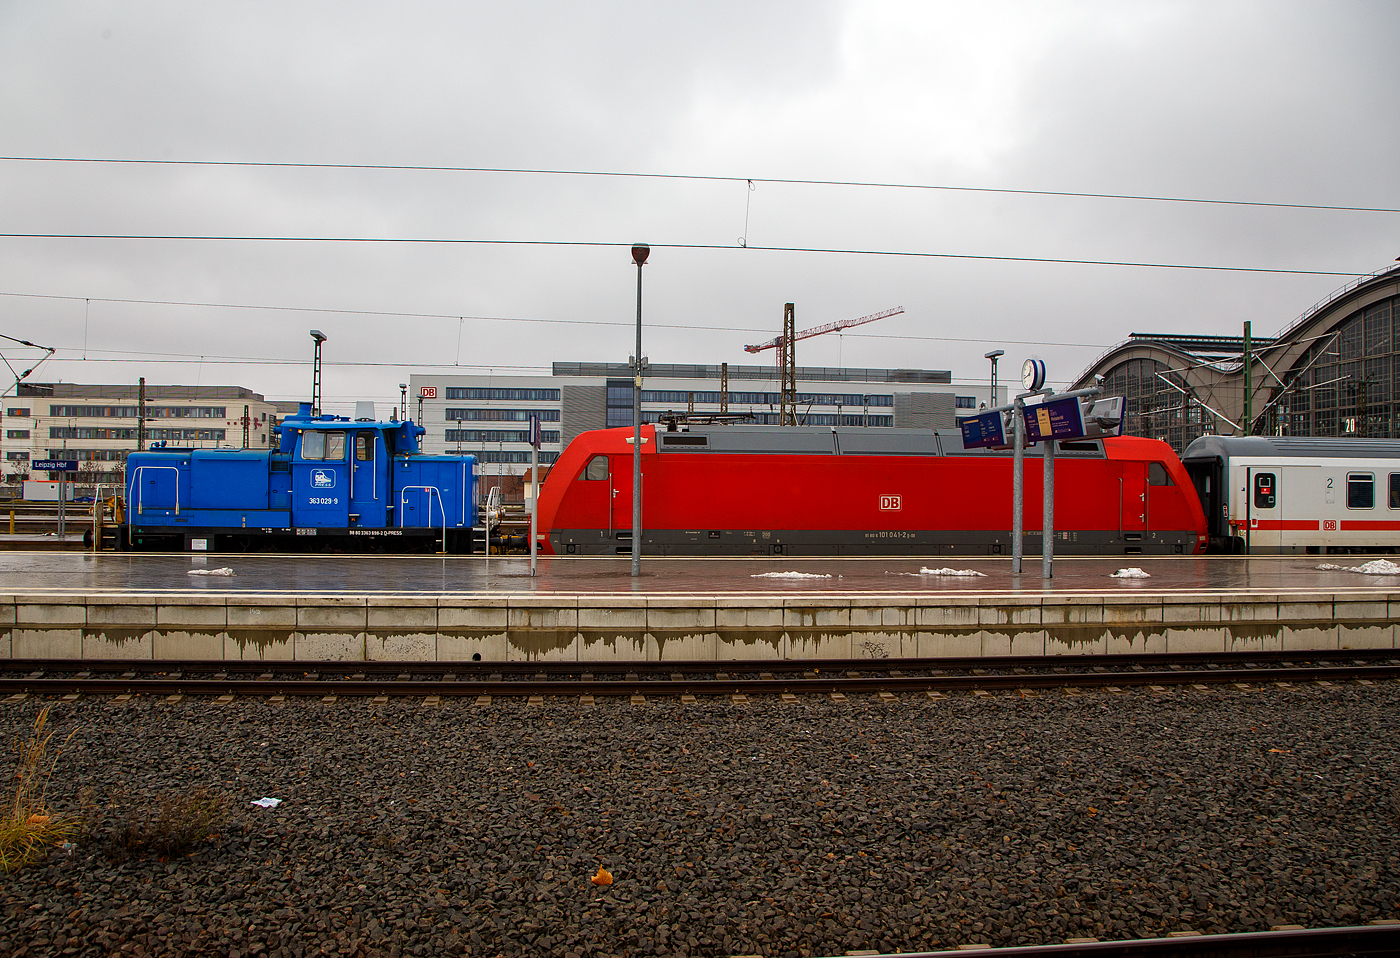 Die an die DB Cargo AG vermietete V 60 – 363 698-2 alias 363 029-9 (98 80 3363 698-2 D-PRESS) der PRESS - Eisenbahnbau- und Betriebsgesellschaft Pressnitztalbahn mbH (Jhstadt), ex DB V 60 698, hat am 06.12.2022 die DB 101 041-2 von der Abstellgruppe geholt und im Hauptbahnhof Leipzig an einen IC herangeschoben. 

Die V60 der schweren Ausfhrung wurde 1960 von MaK unter der Fabriknummer 600287 gebaut uns als V 60 698 an die DB - Deutsche Bundesbahn geliefert, 1968 erfolgte die Umzeichnung in DB 261 698-5. Zum 01.10.1987 wurde sie, wie alle V60, zur Kleinlok und somit zur DB 361 698-4. Im Jahr 1989 erfolgte der Umbau bzw. die Ausrstung mit Funkfernsteuerung und sie wurde dadurch zur DB 365 698-0. Die Remotorisierung mit einem neuen CAT 3412E DI-TTA Motor erfolgte 1998 und sie wurde nun zur (heutigen) DB 363 698-2. Die Ausmusterung bei der DB erfolgte 2007 und sie wurde an die PRESS verkauft. Seit 2020 ist sie an die DB AG vermietet.
